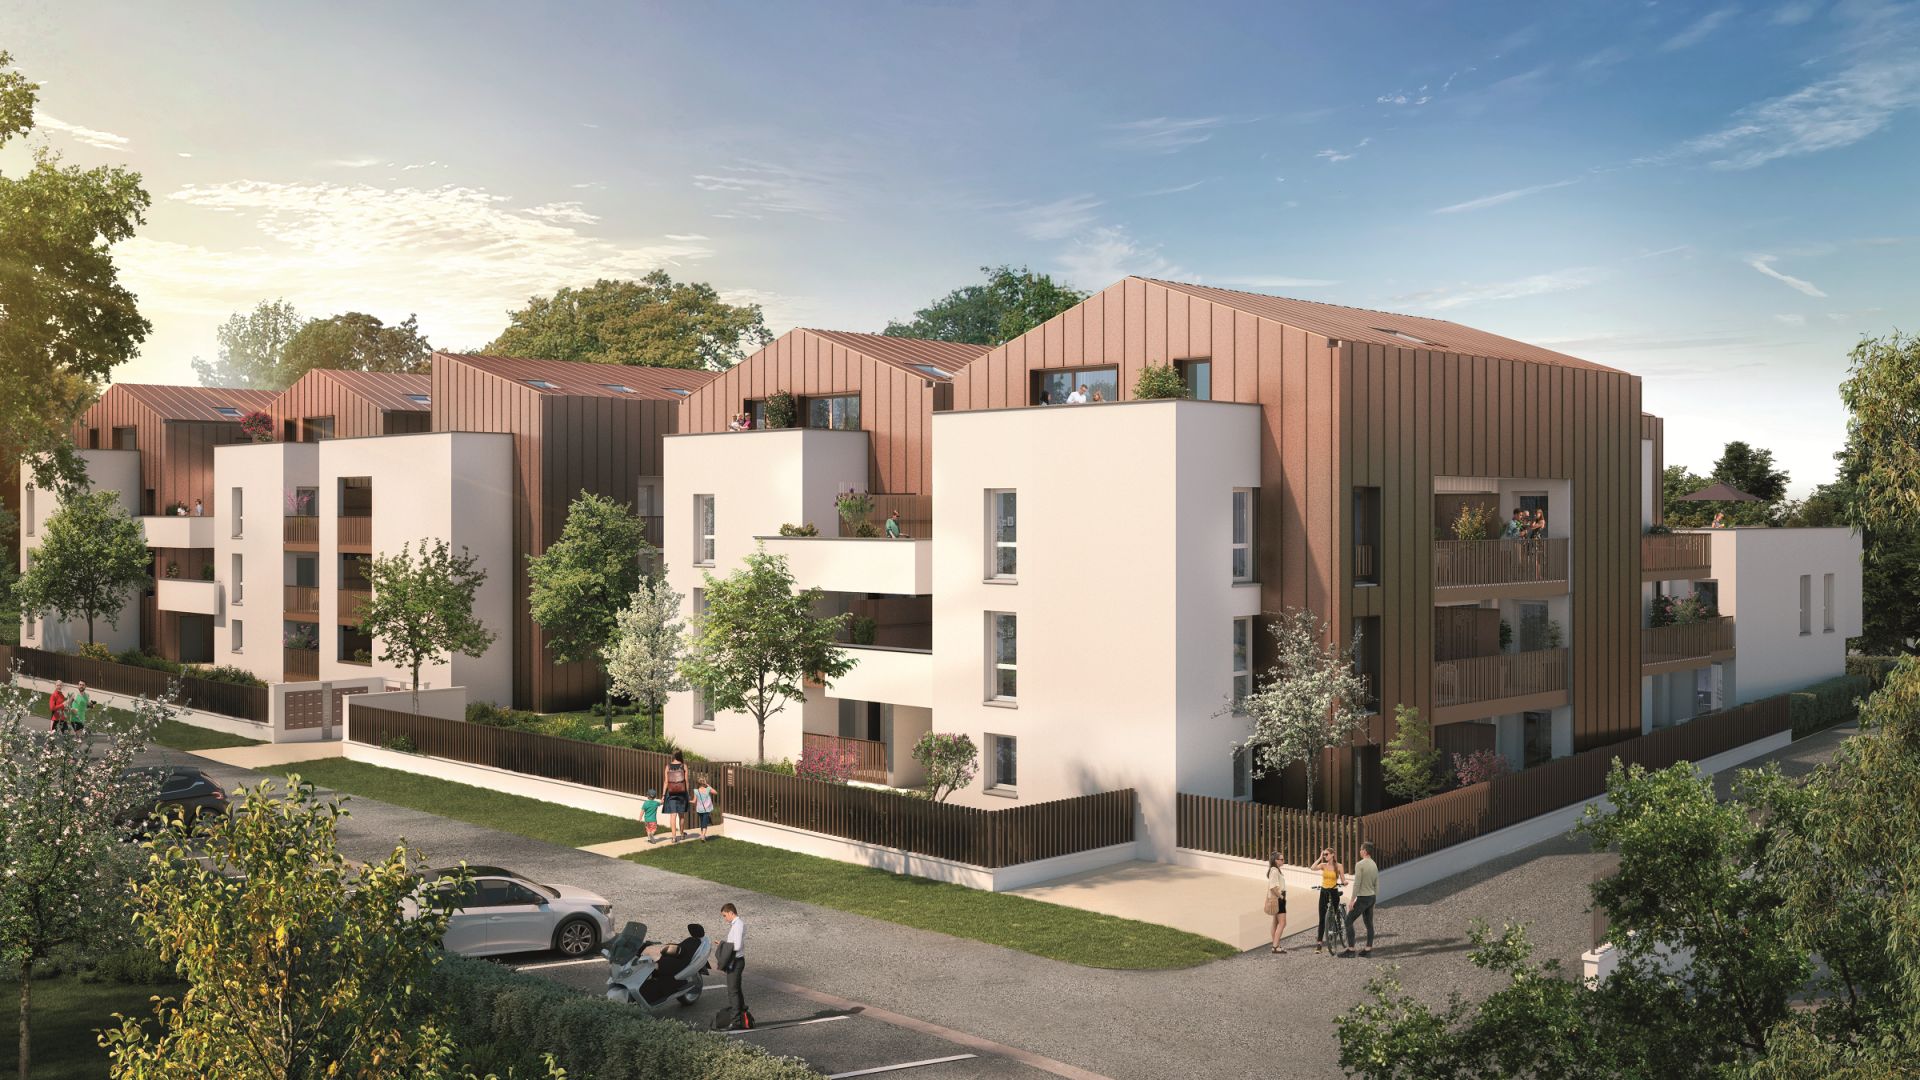 Greencity immobilier - achat appartements neufs du T2 au T4 - Résidence Open Garden -  31200 Toulouse Croix Daurade